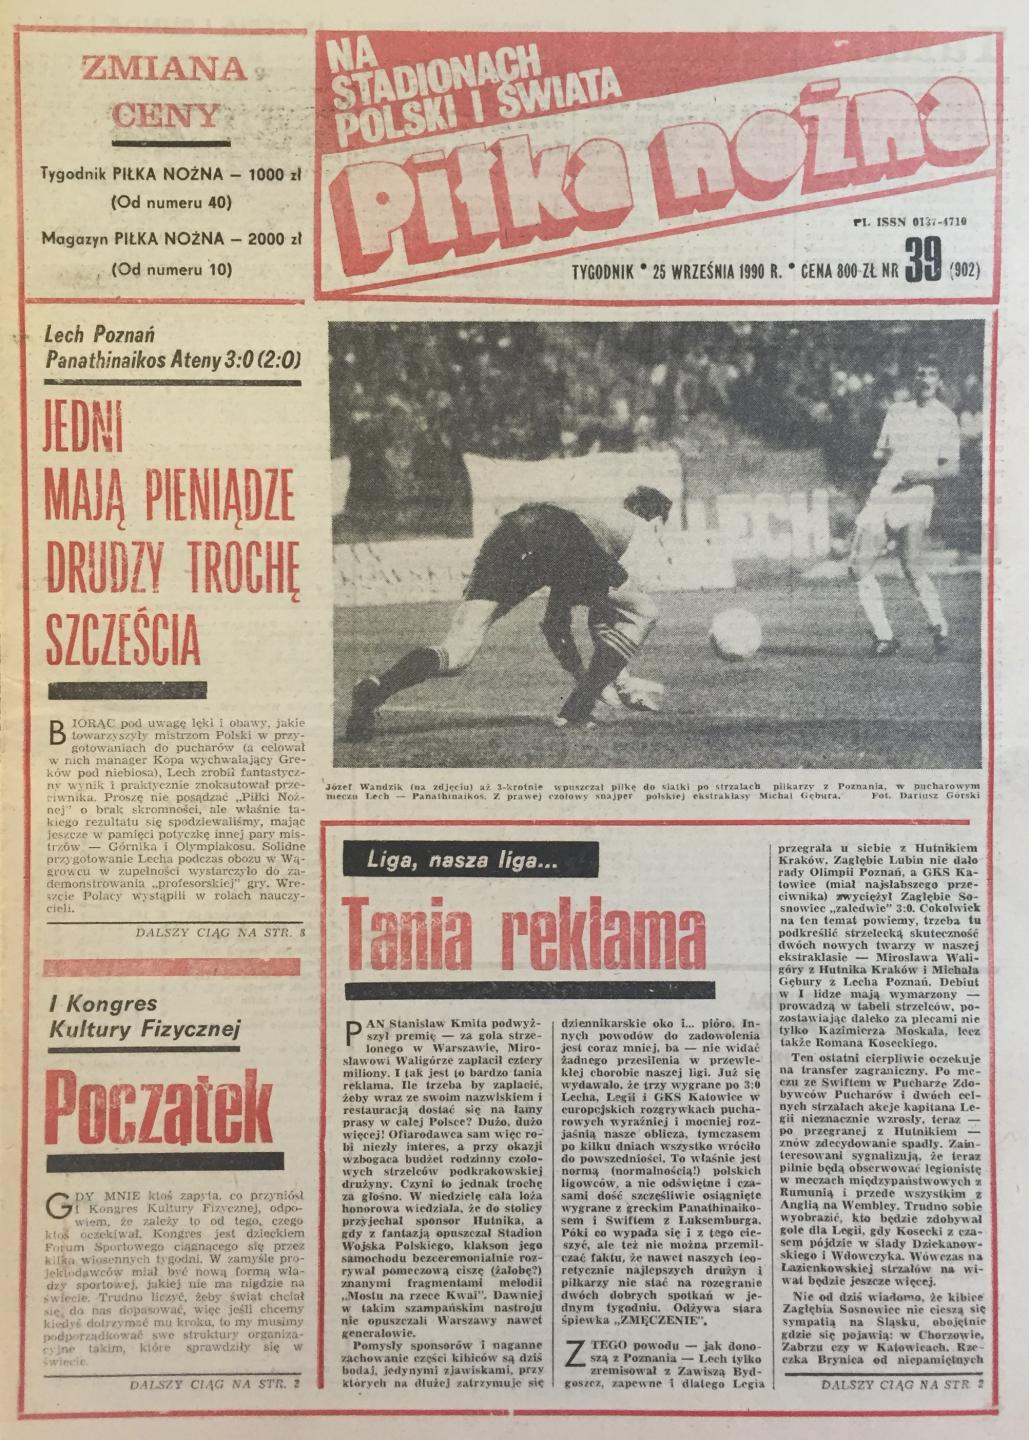 Piłka Nożna po Lech Poznań - Panathinaikos Ateny 3:0 (19.09.1990)